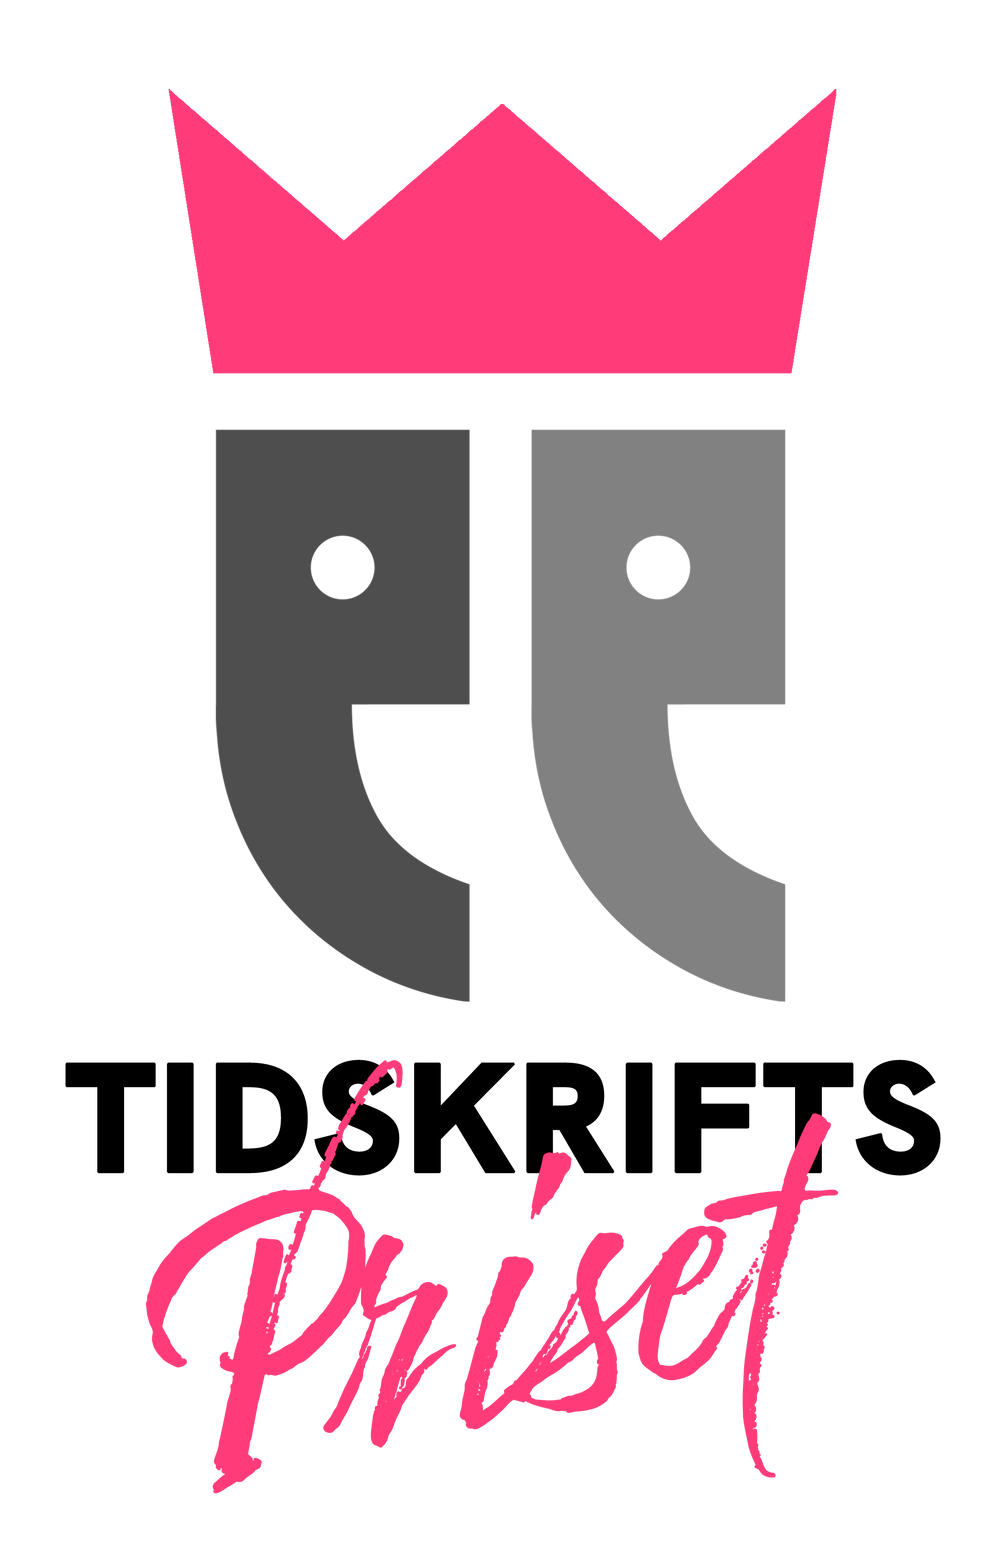 Logo Tidskriftspriset 2021